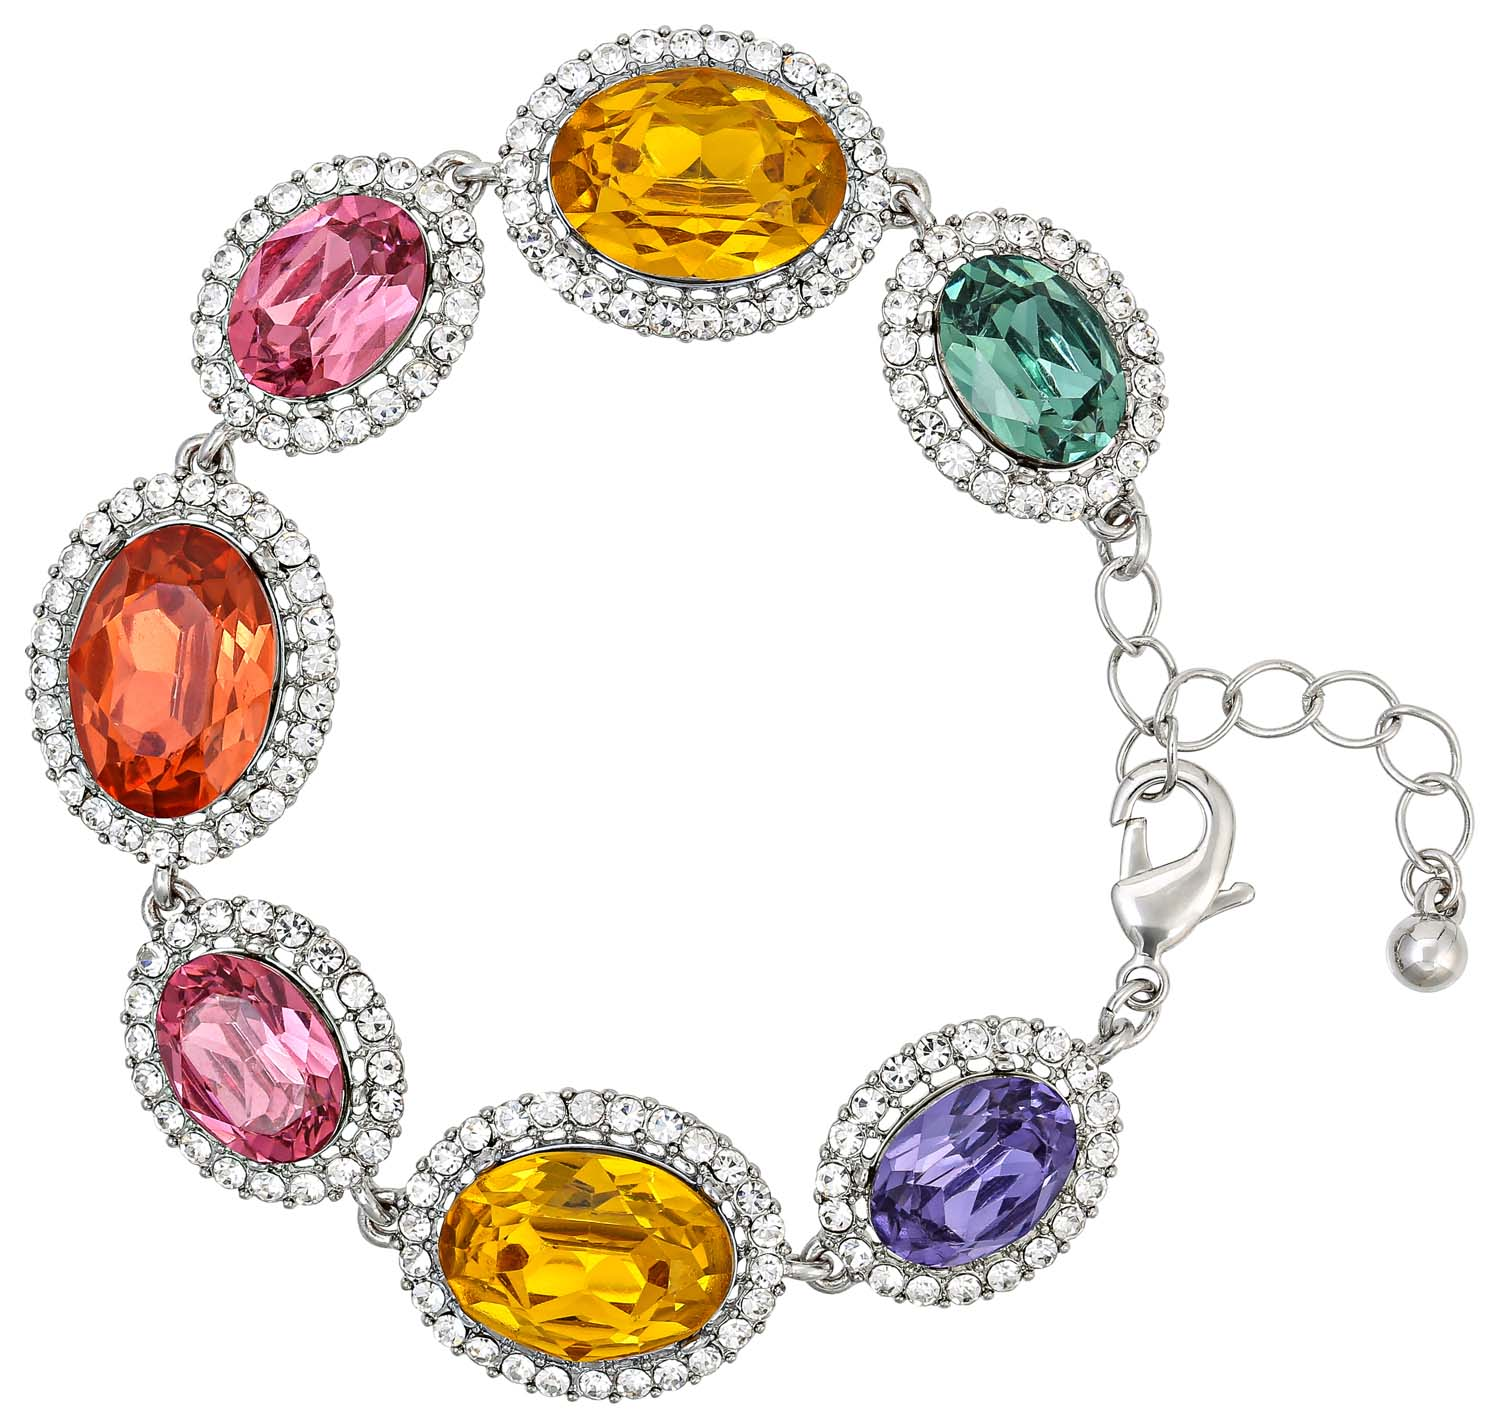 Bracelet - Royal Colors